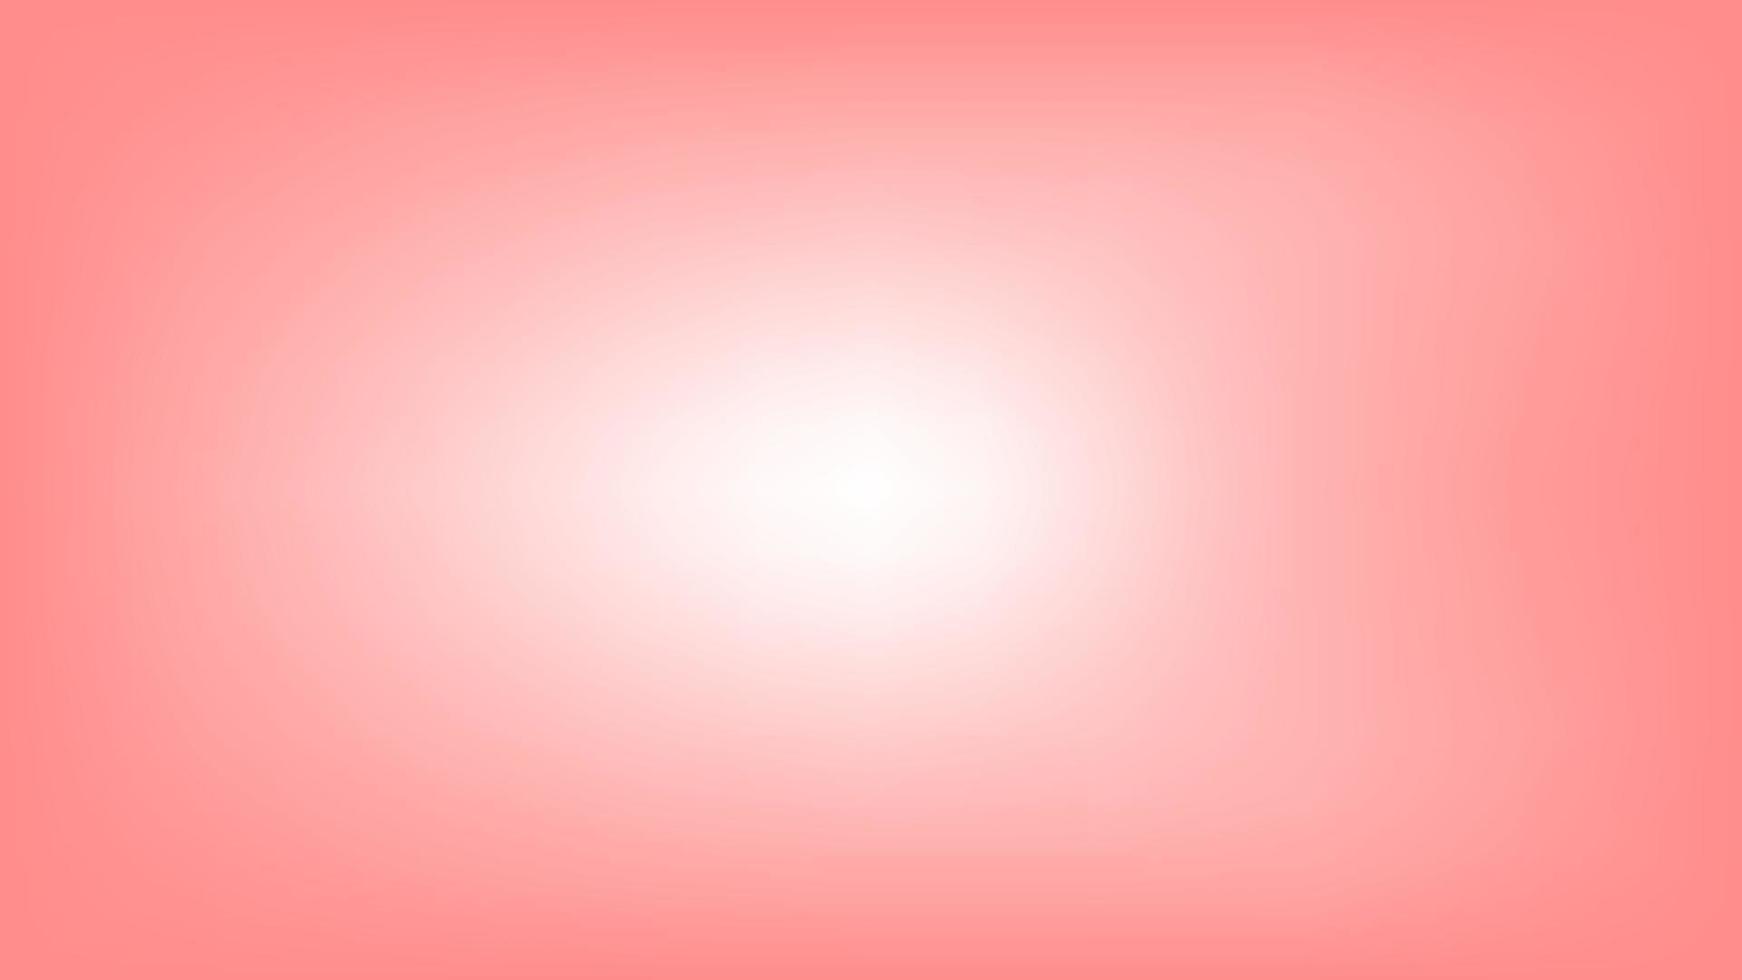 Vektor-Illustration Zusammenfassung glänzend rosa Liebe Hintergrund vektor